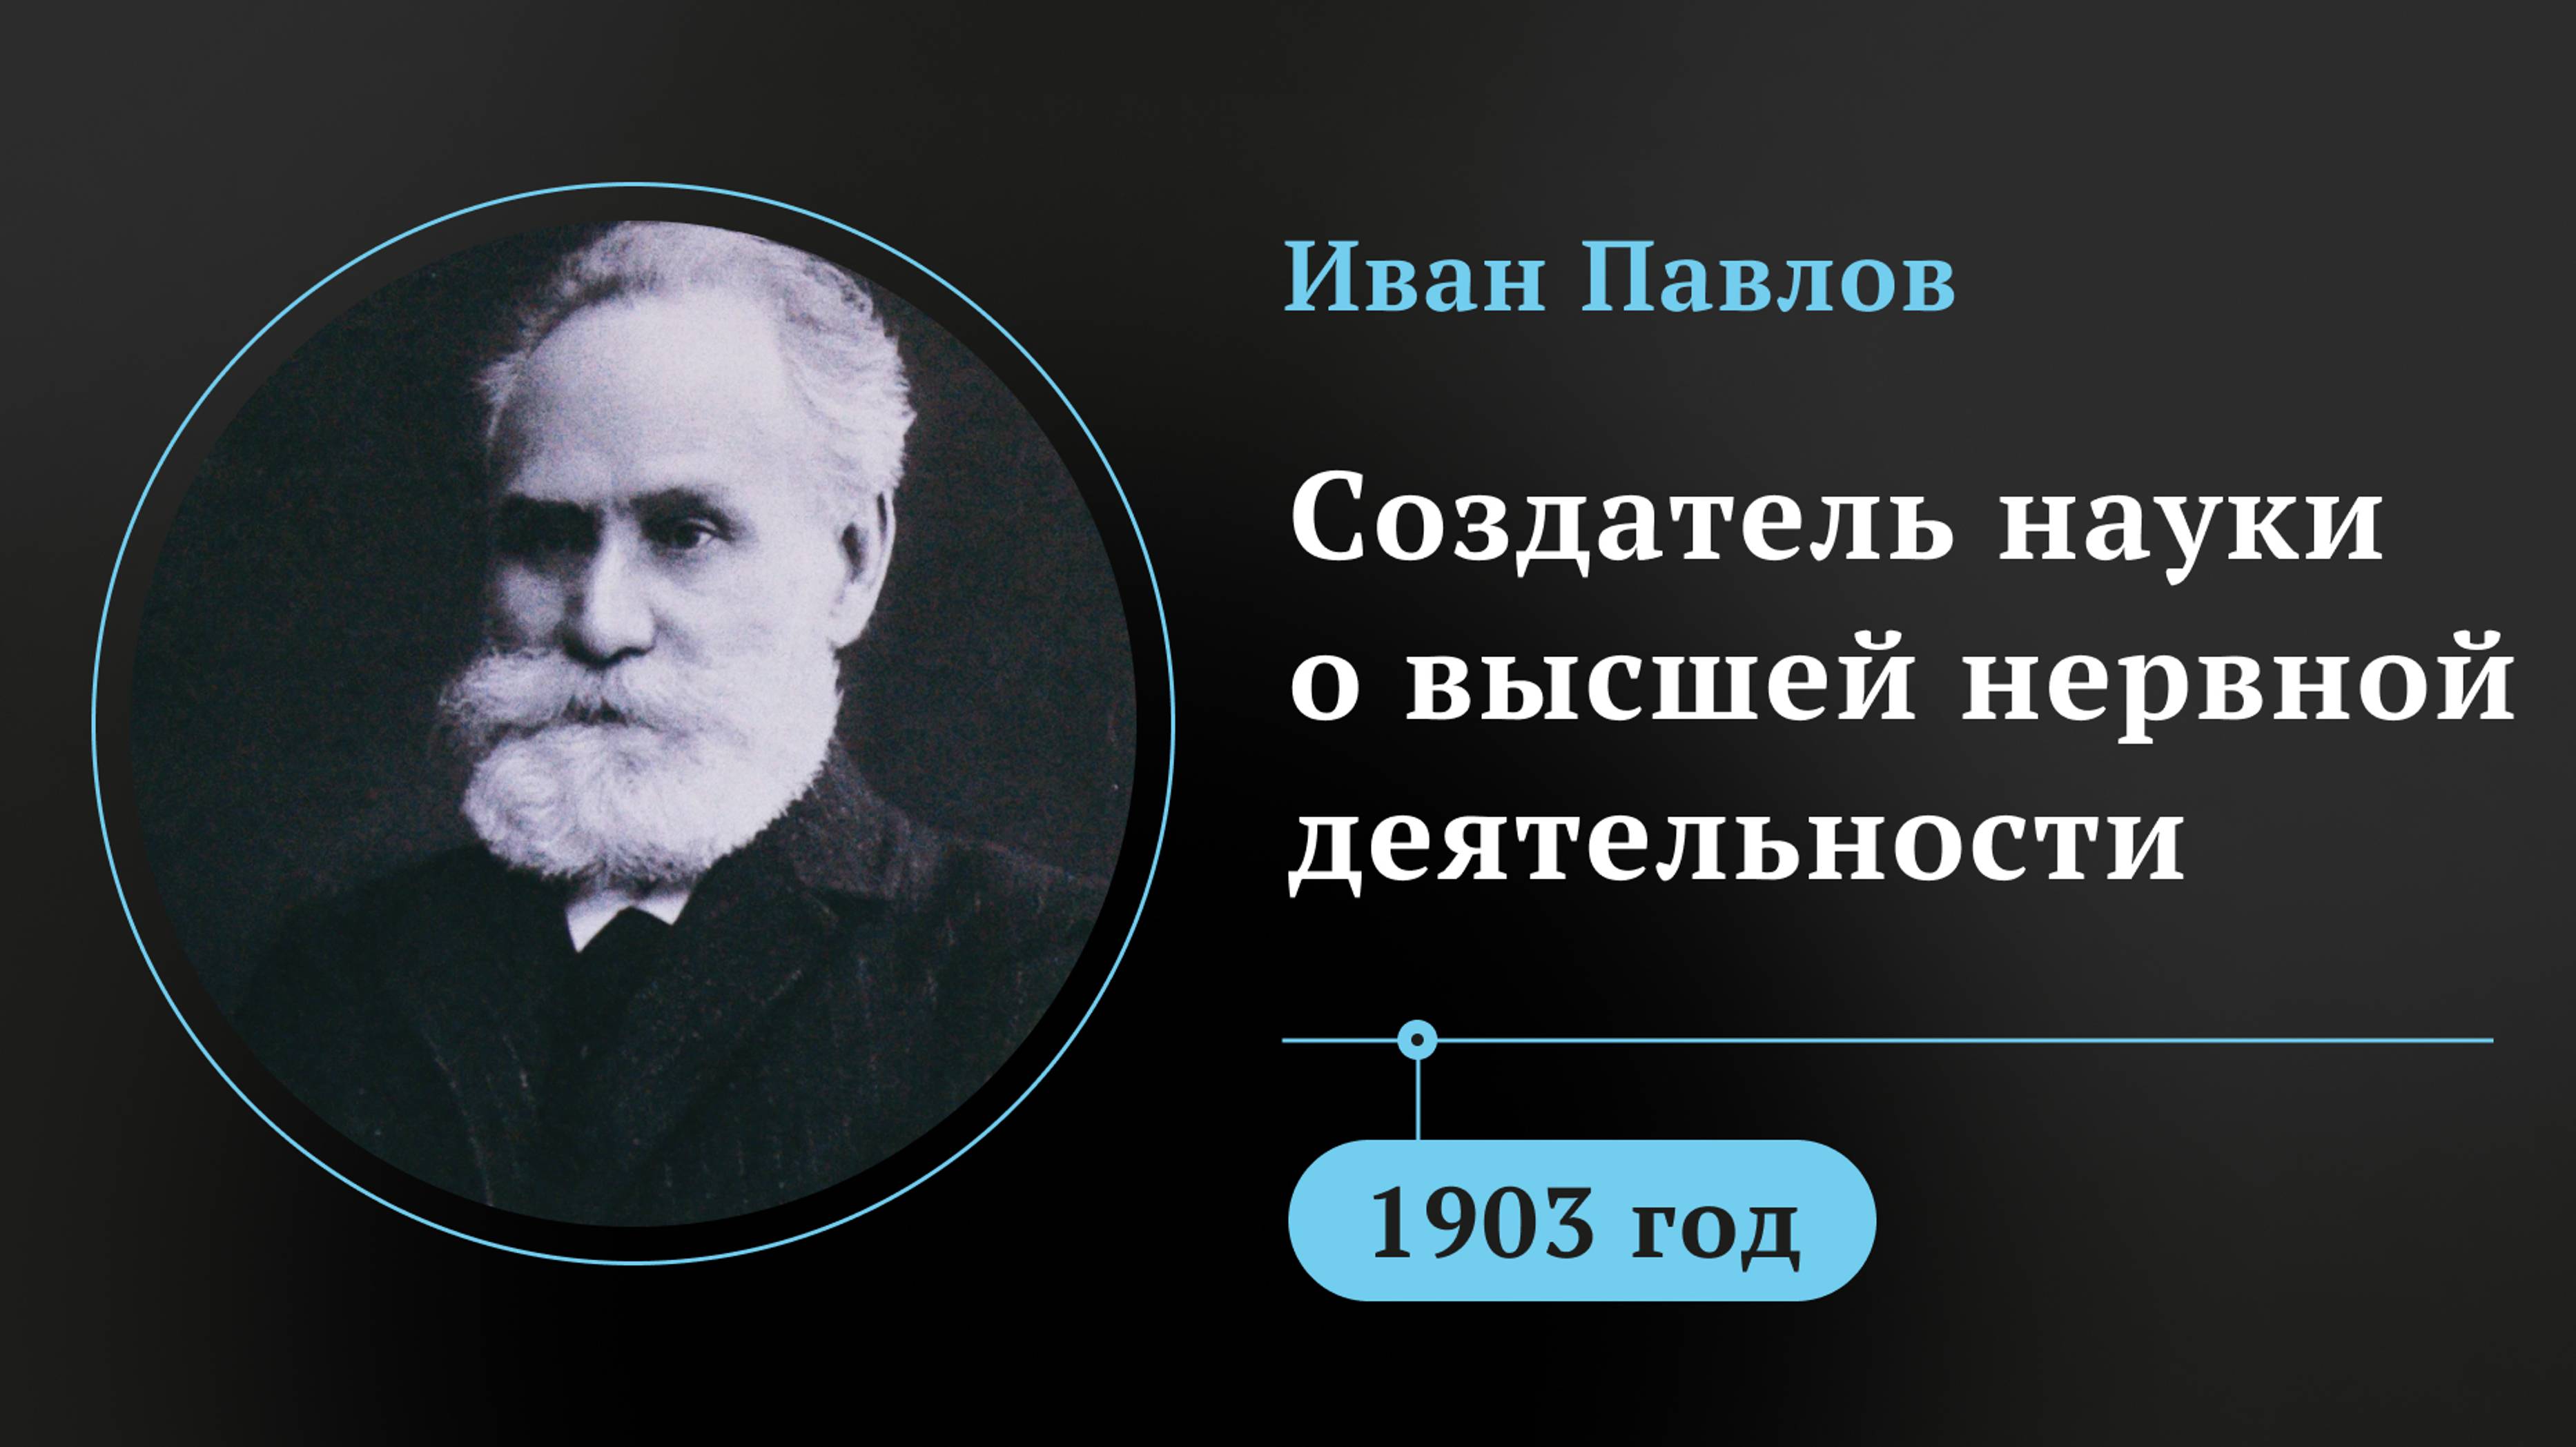 Иван Павлов. Создатель науки о высшей нервной деятельности